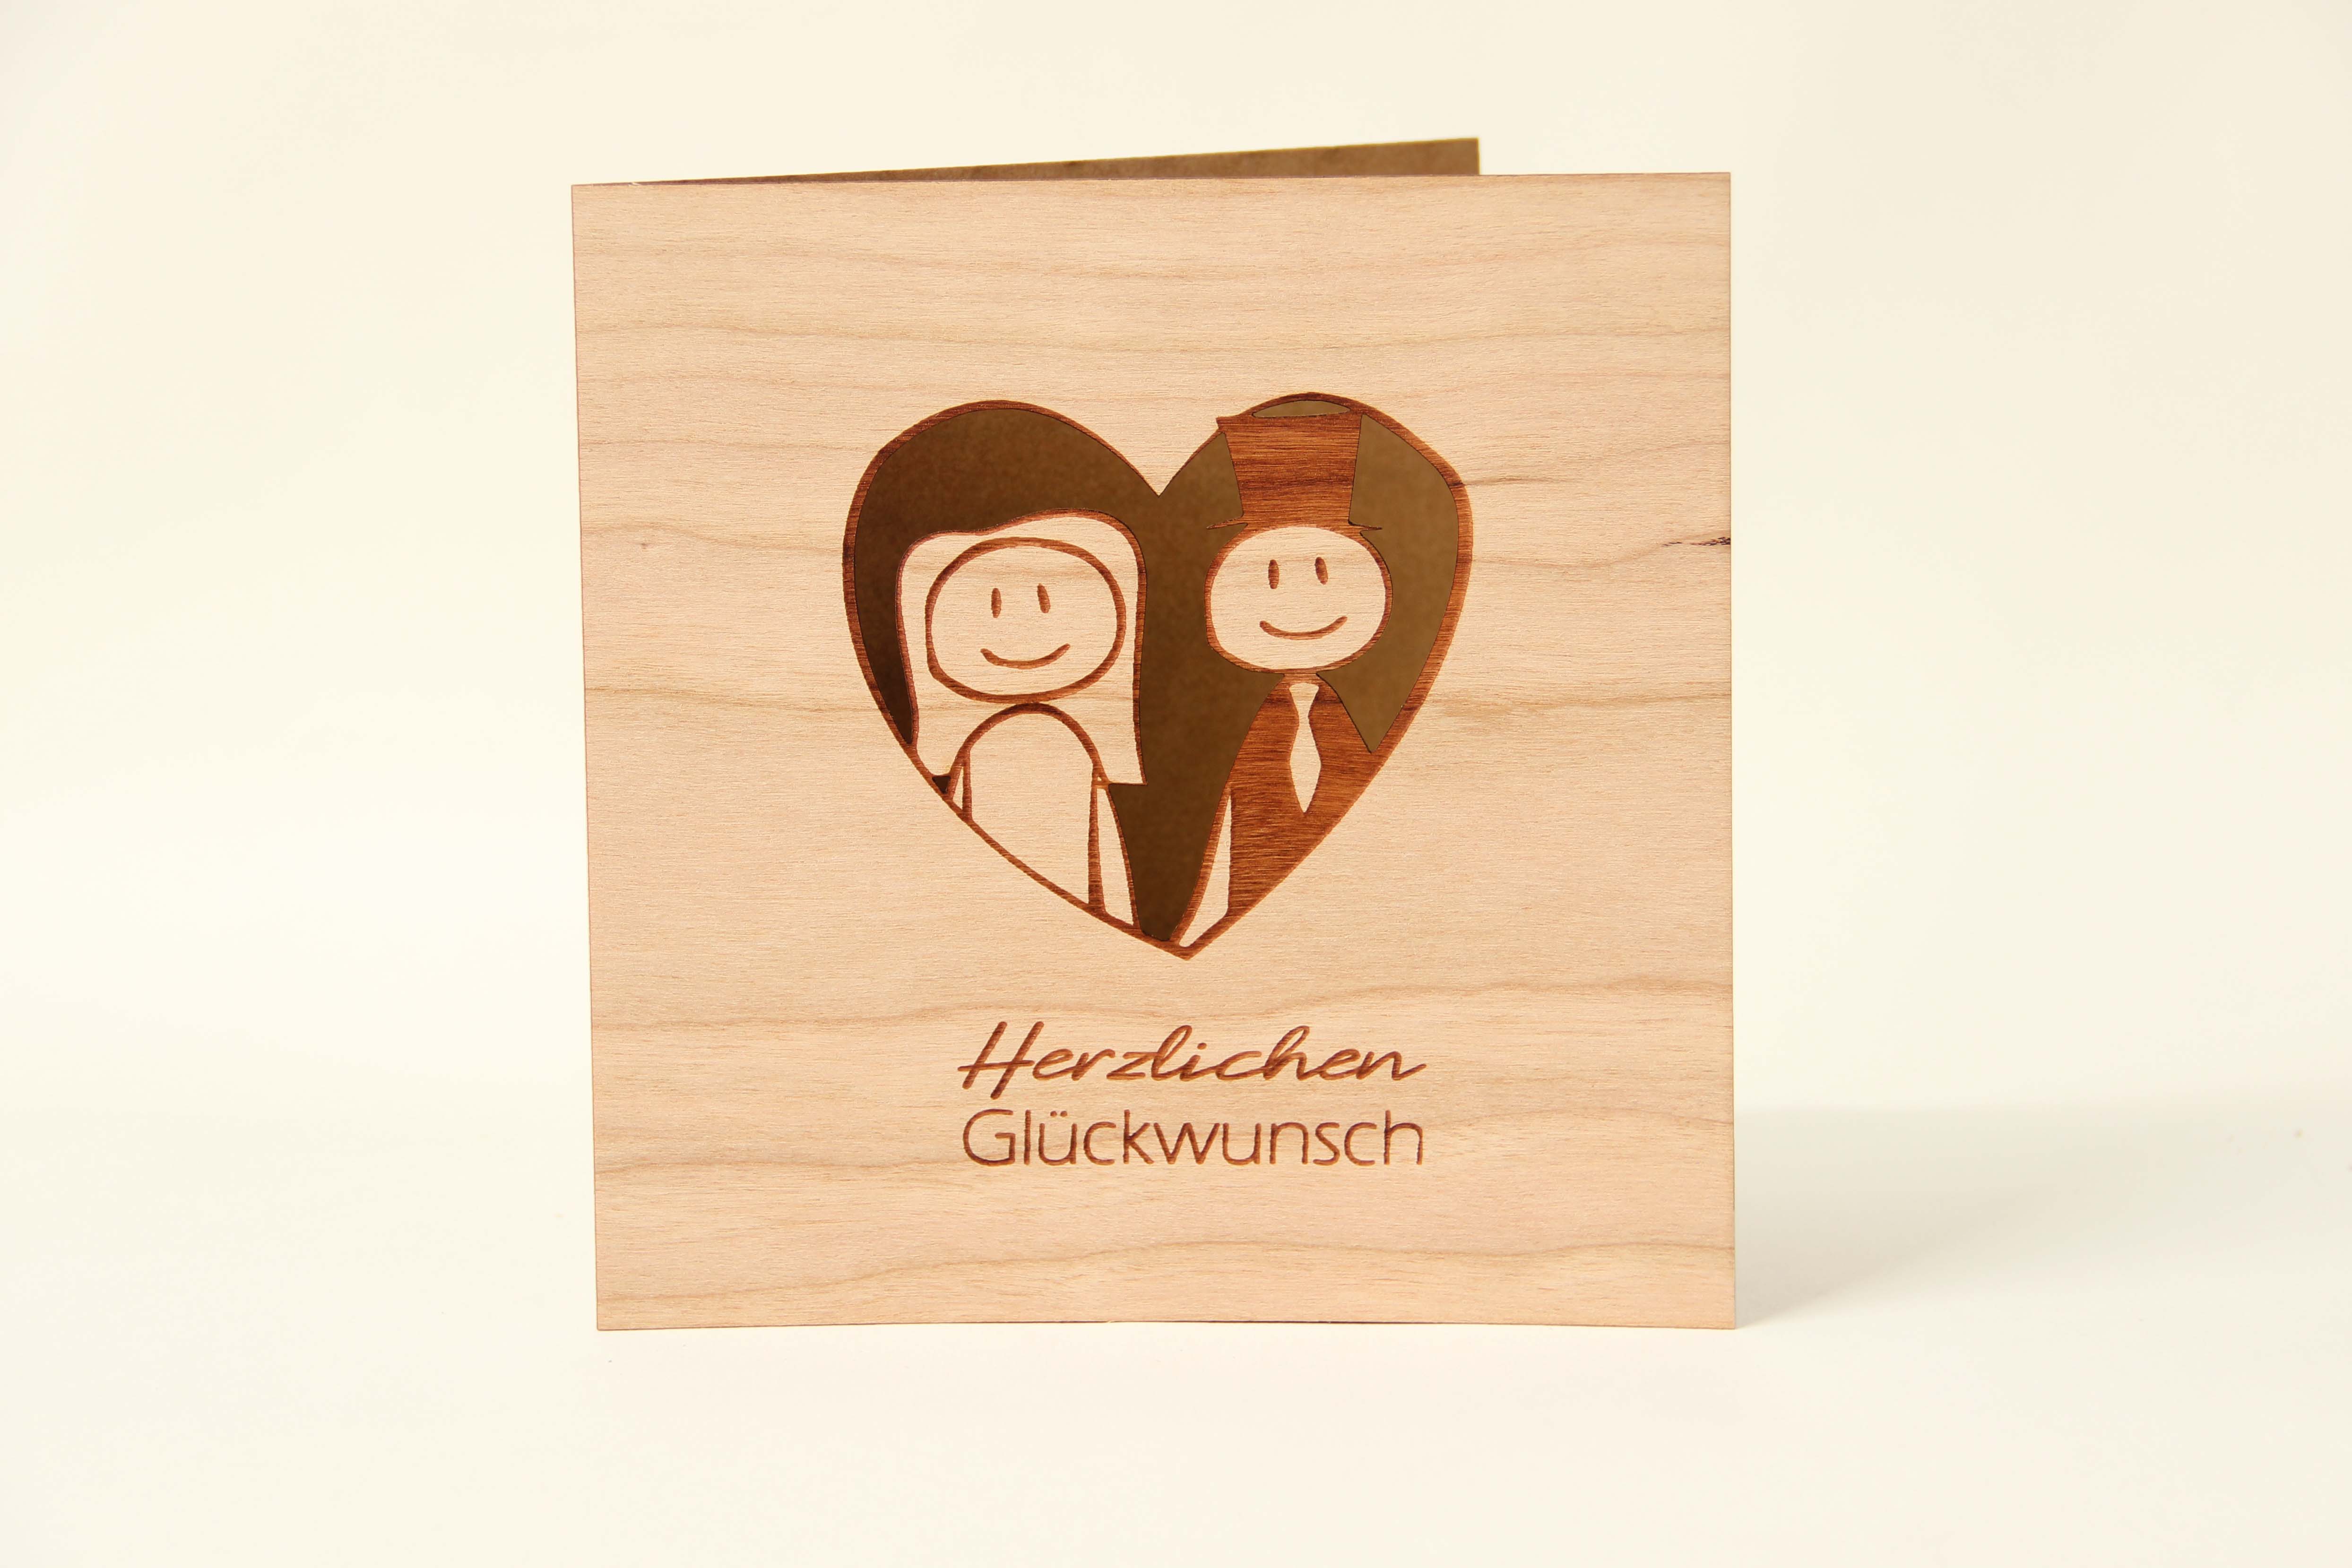 Holzgrusskarten - Holzgrusskarte Hochzeit "Herzlichen Glückwunsch", Brautpaar, Herz, Kirsche